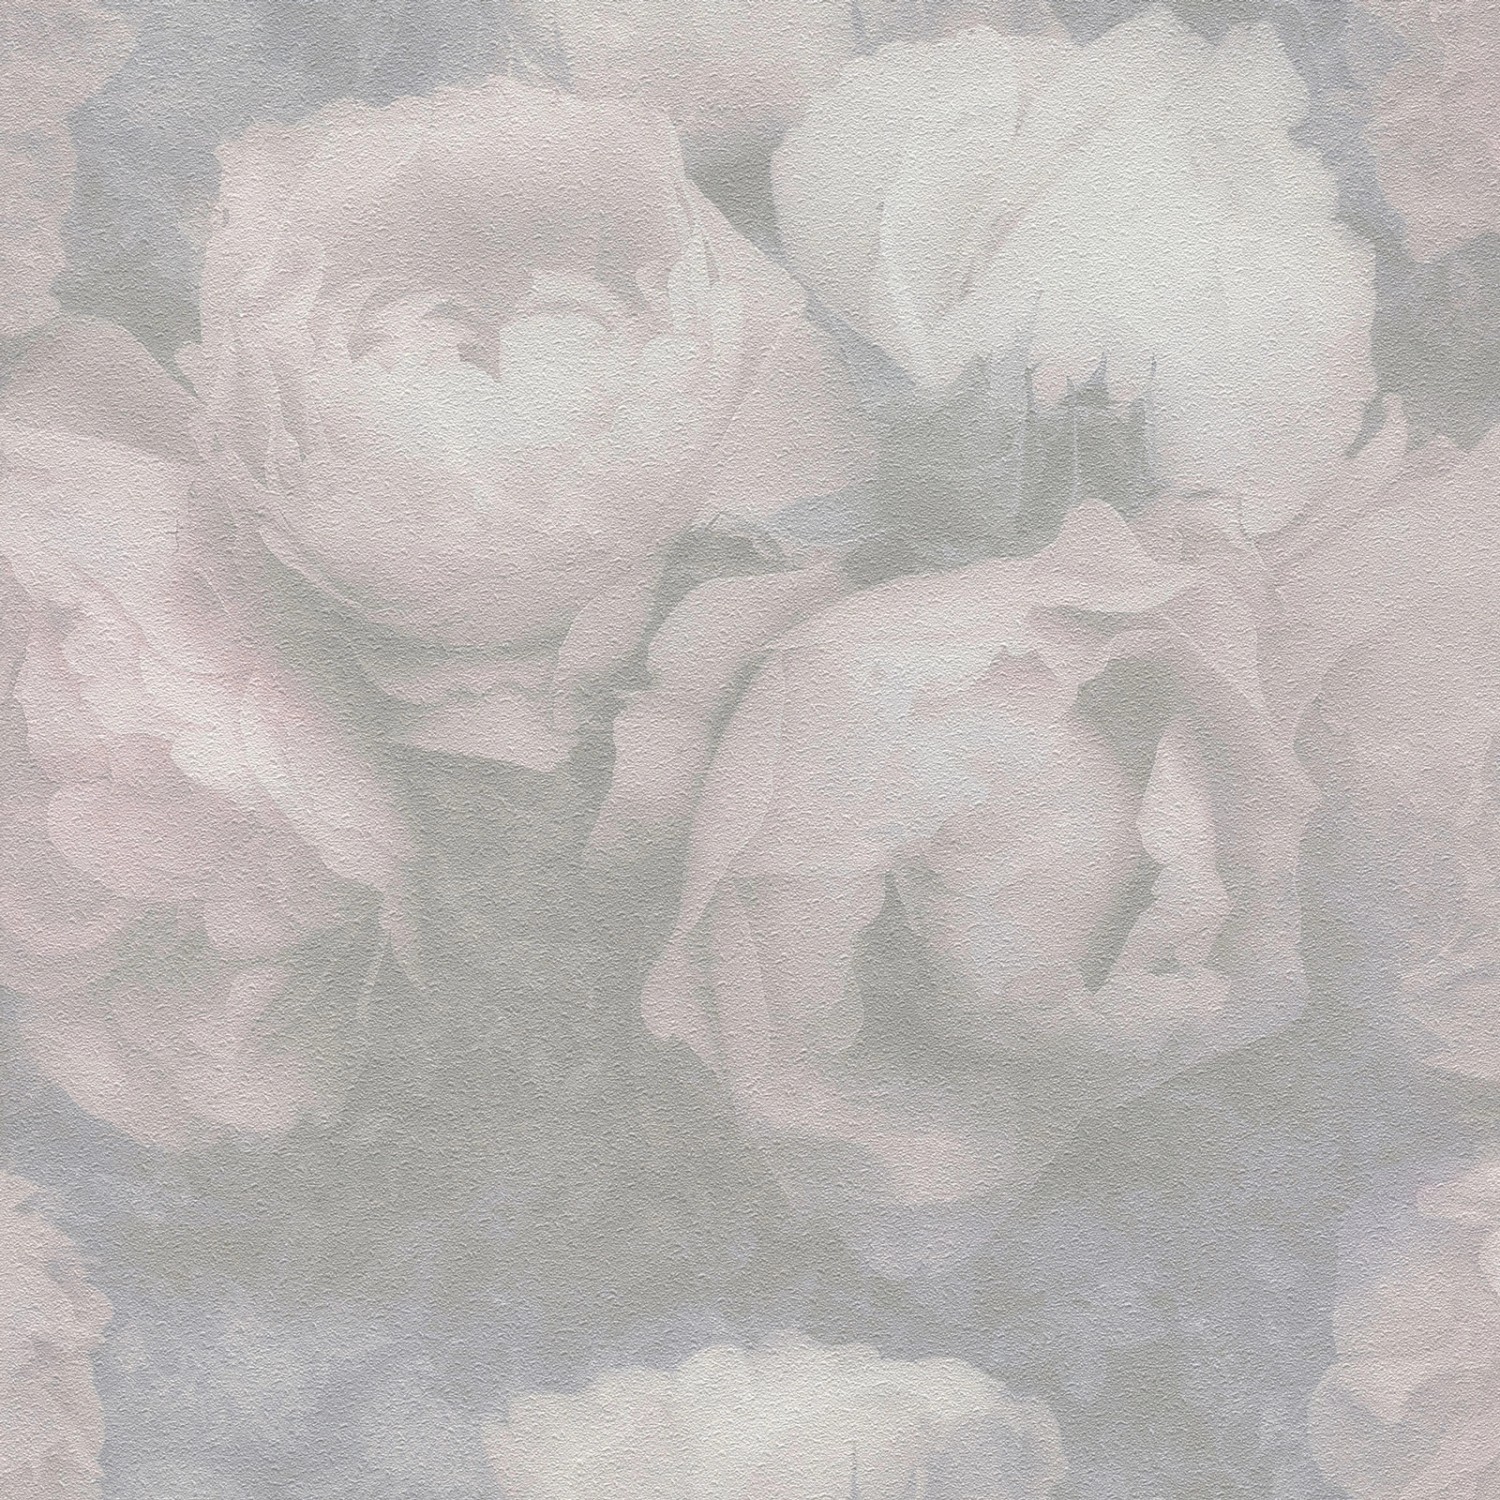 Bricoflor Pastell Tapete mit Rosen Vintage Blumentapete Romantisch in Grau Rosa für Ess und Schlafzimmer Vlies Rosentapete im Shabby Chic Nostalgisch von Bricoflor